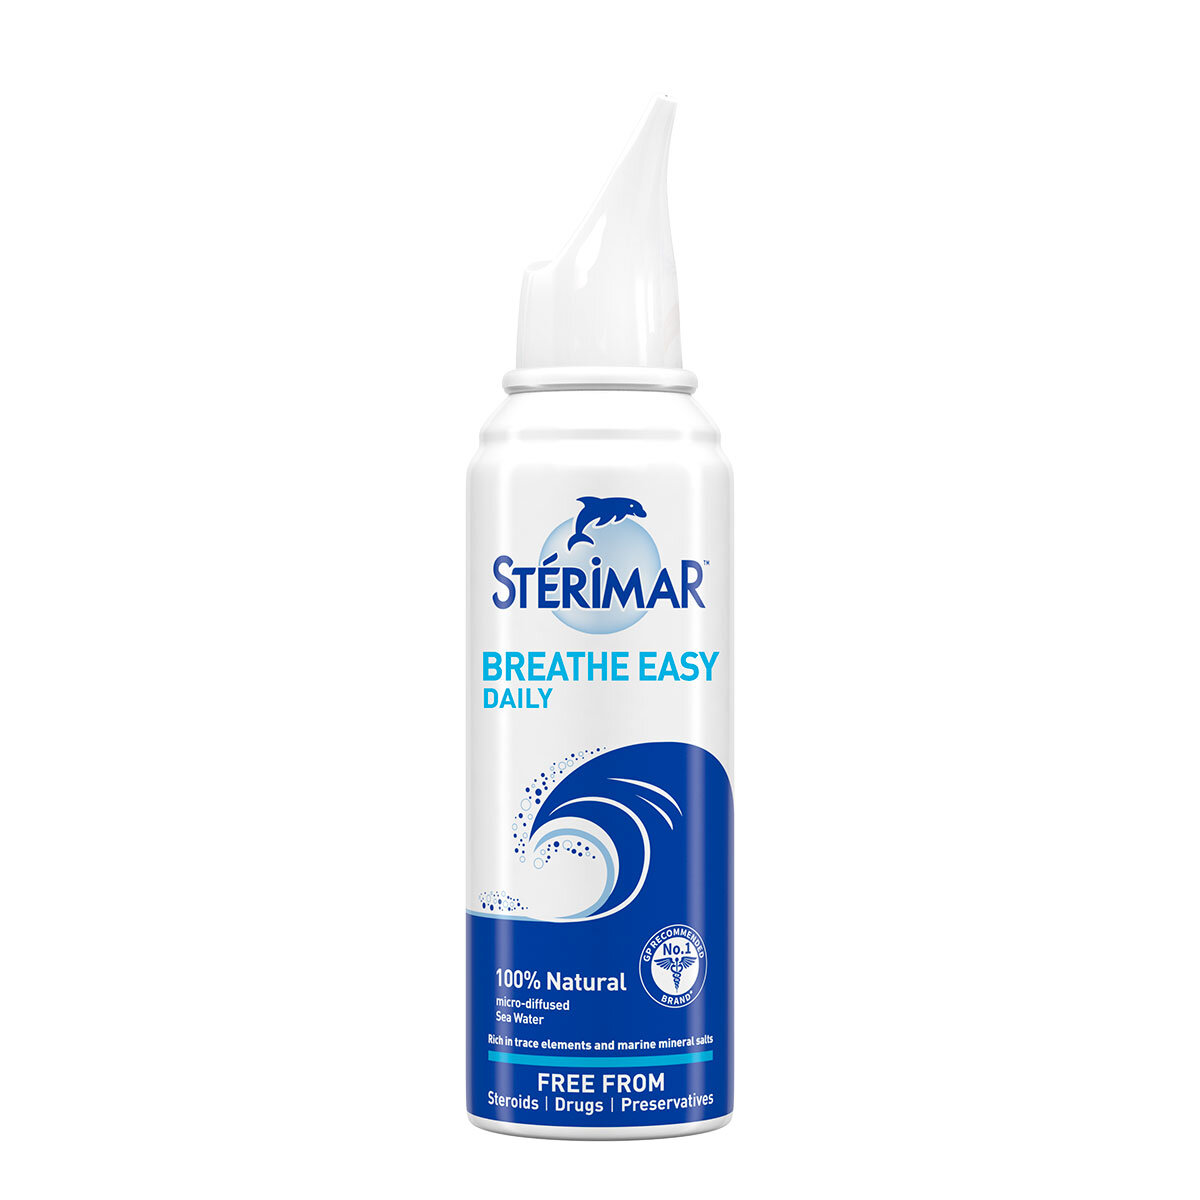 Sterimar Breathe Easy bottle